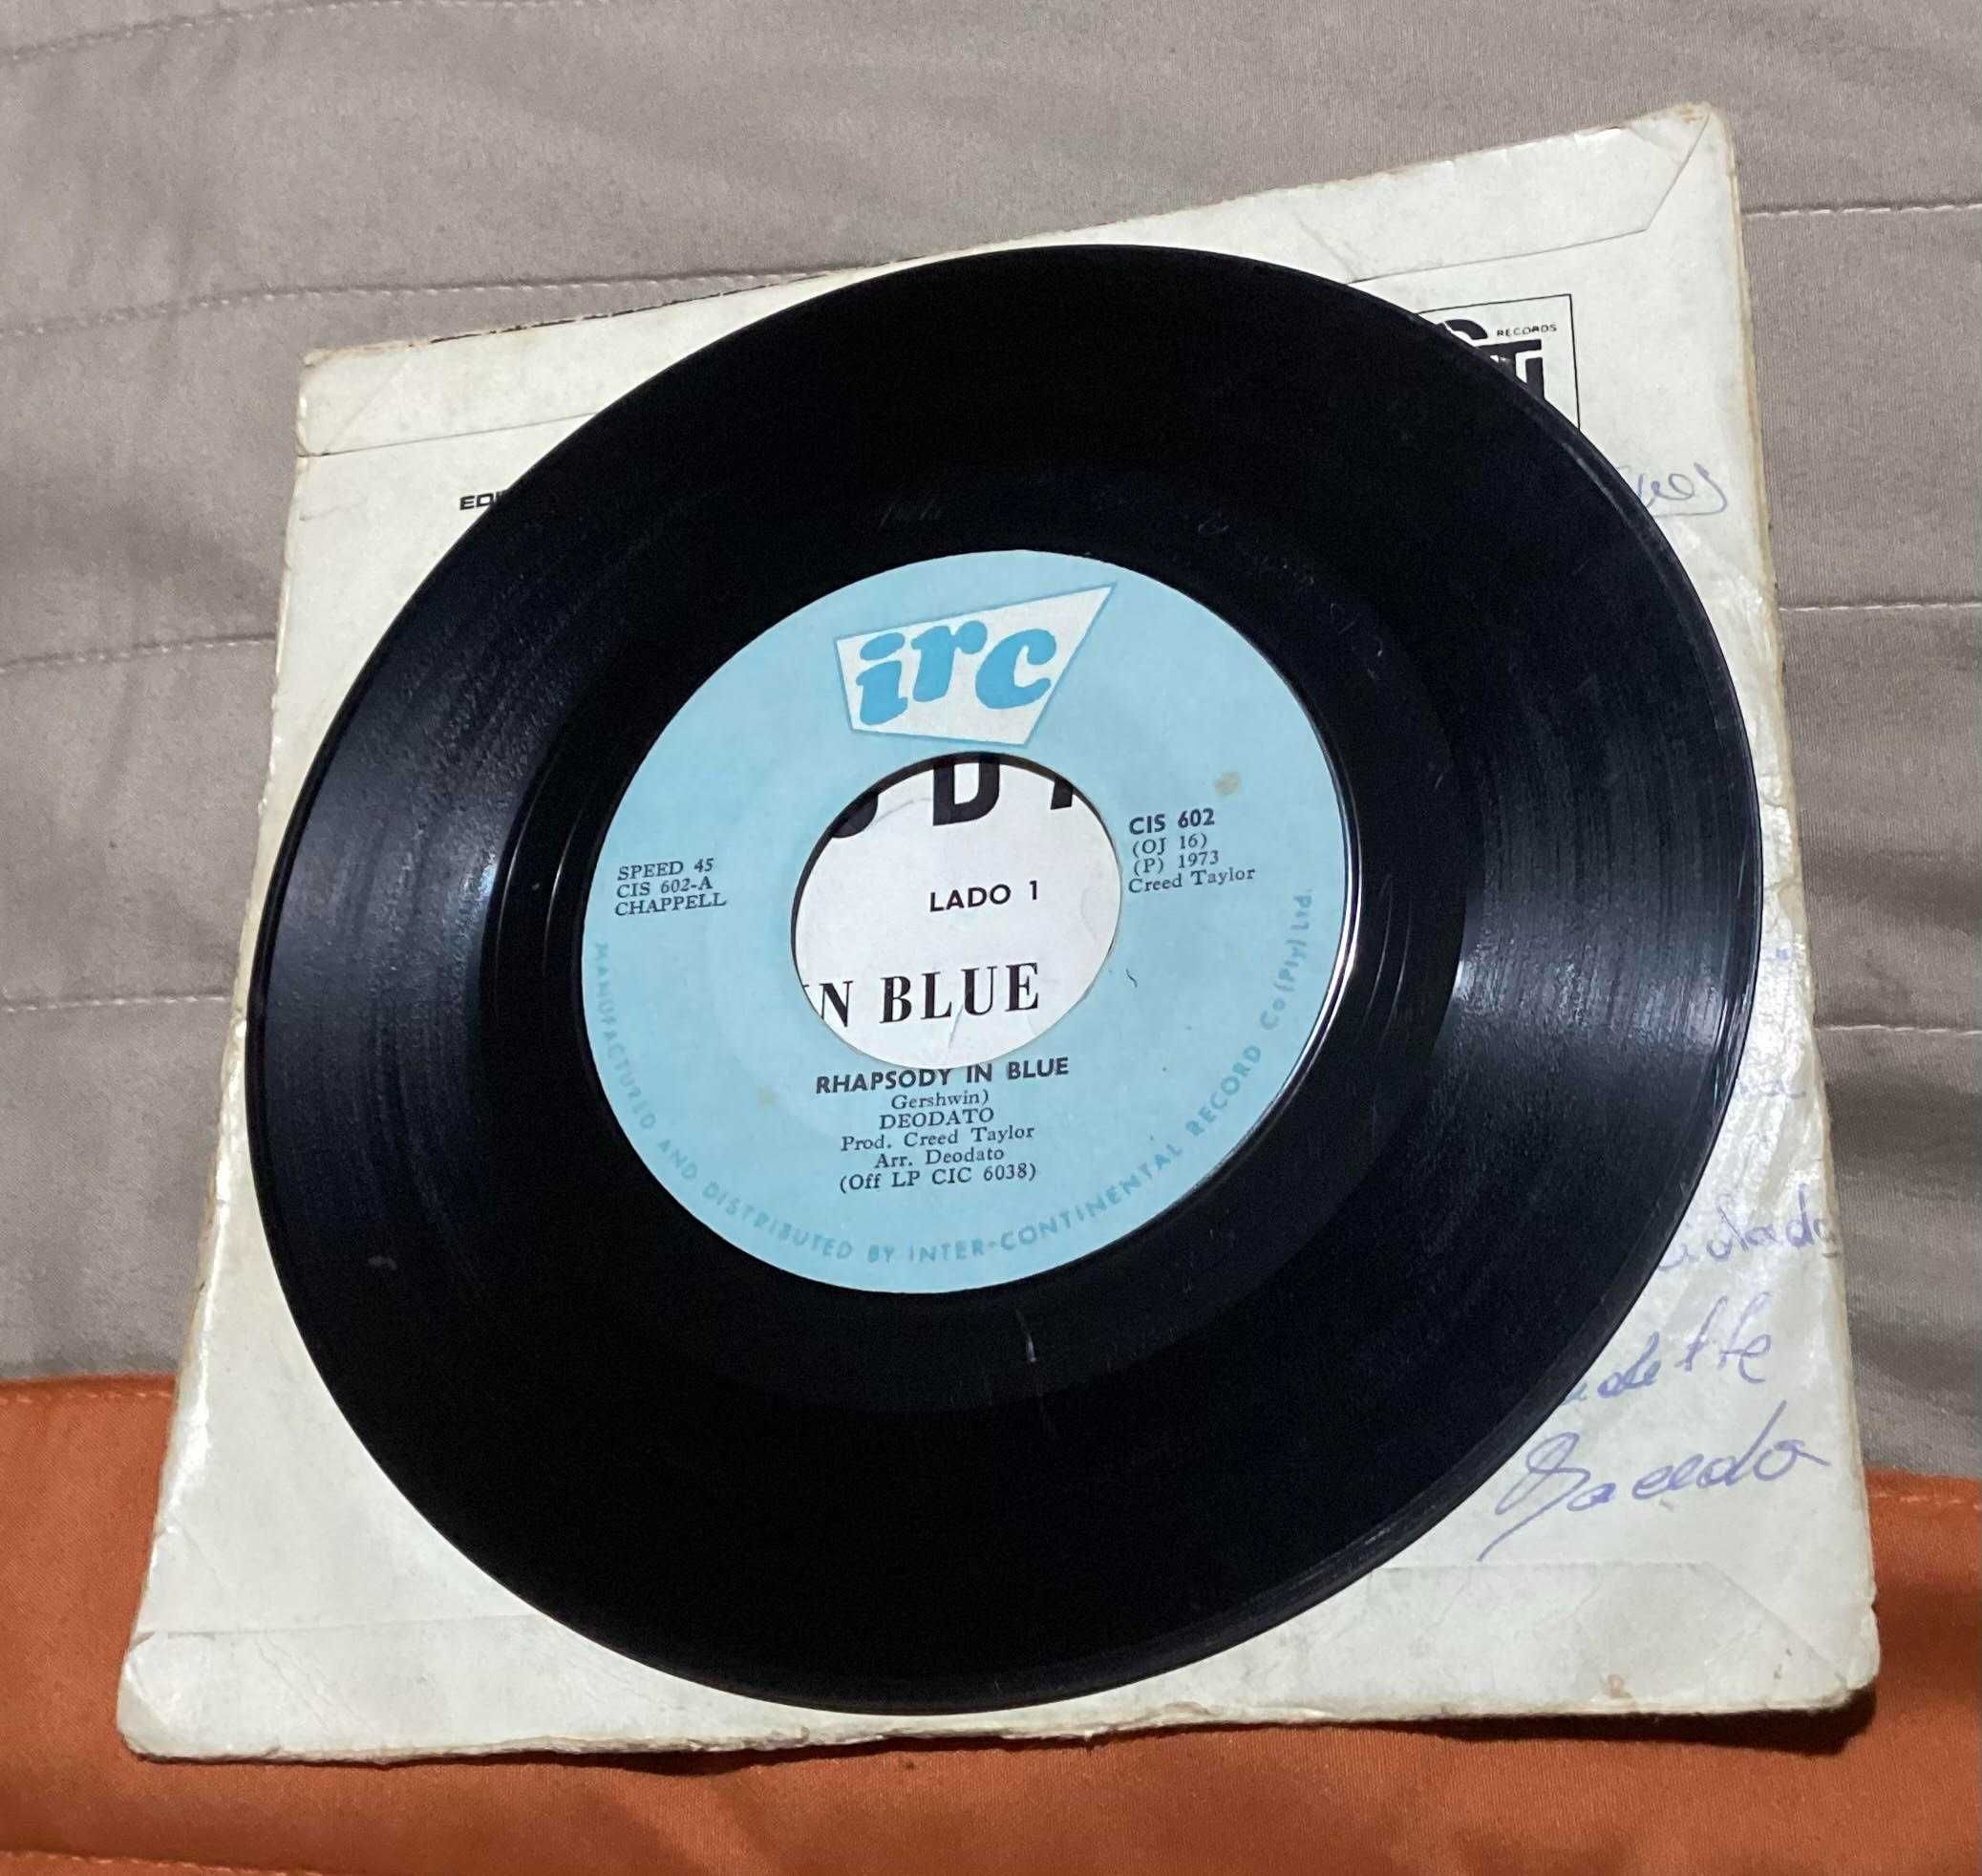 Single Deodato Rhapsody In Blue Bossa jazz Angola 1973